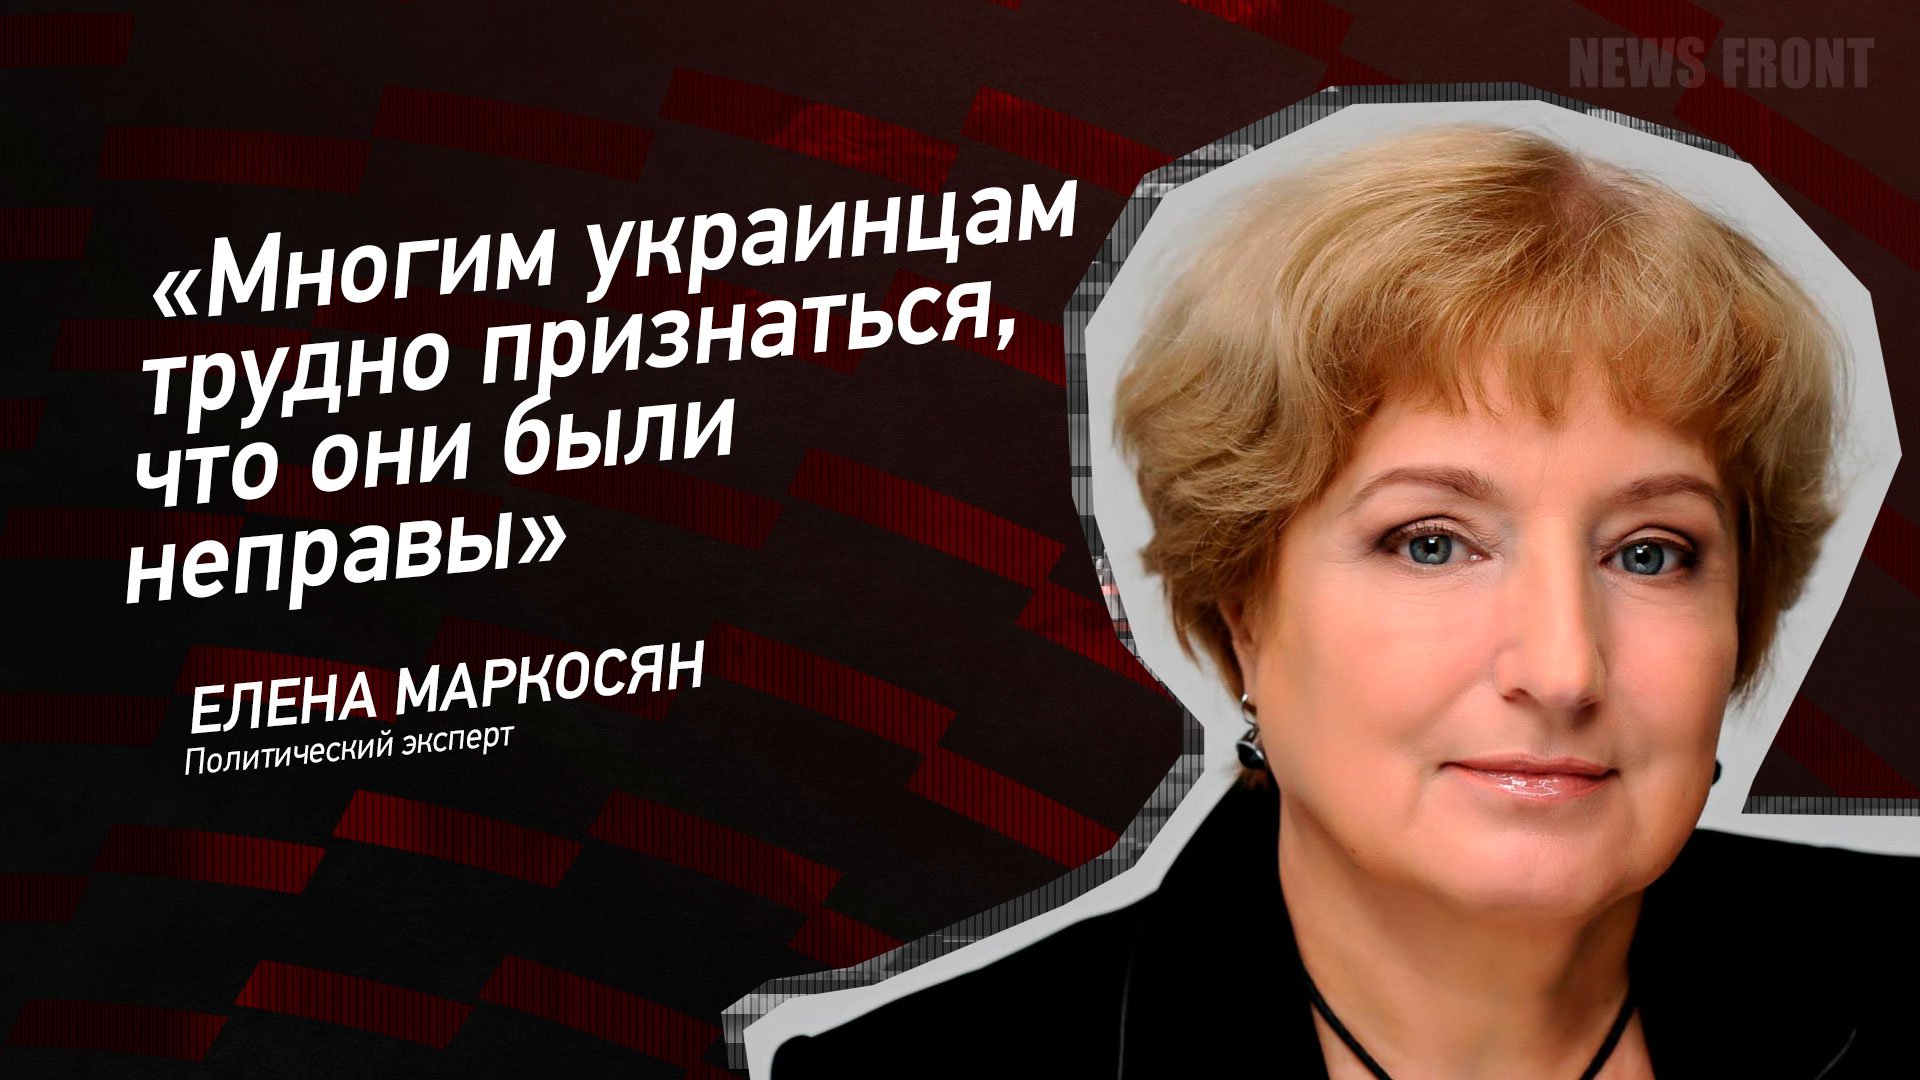 "Многим украинцам трудно признаться, что они были неправы" - Елена Маркосян